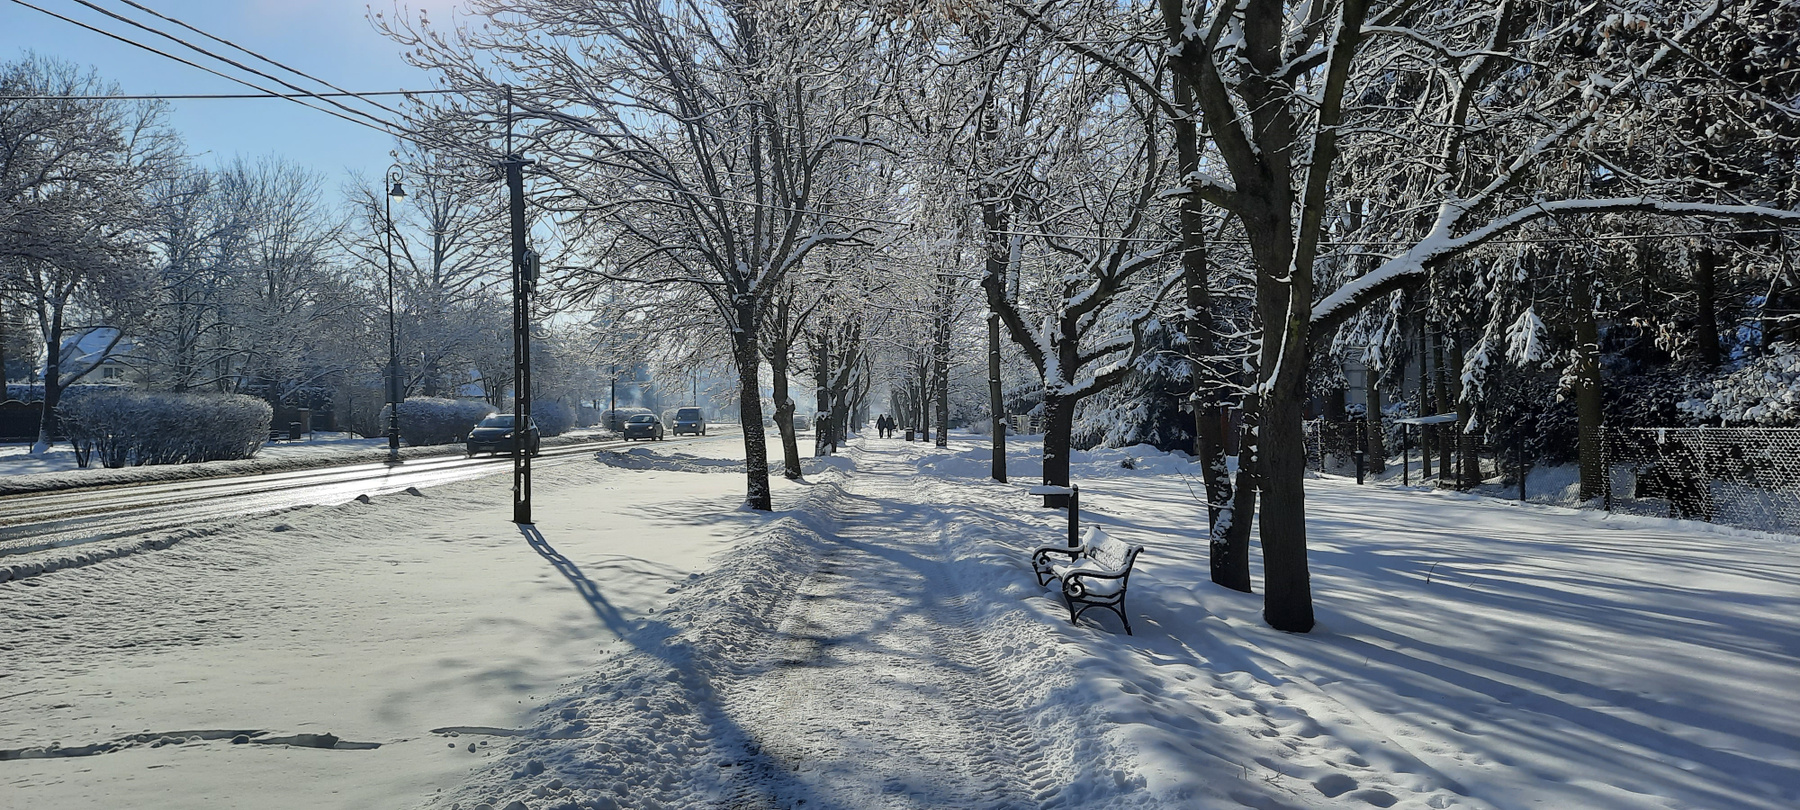 прогулка вдоль улицы зима снег